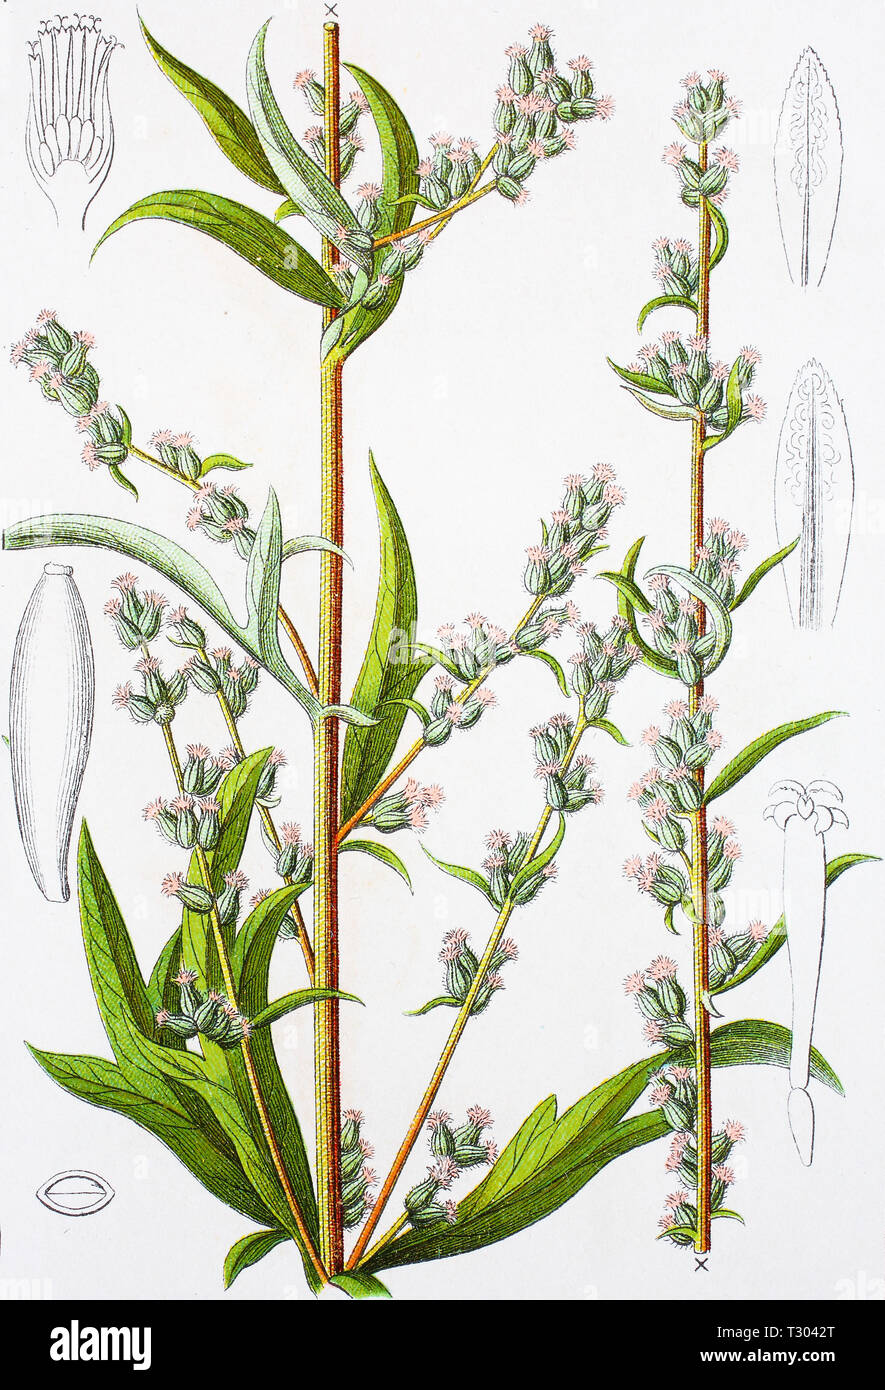 Amélioration numérique reproduction d'une illustration de, la société Beifuß, Artemisia vulgaris, Armoise commune, d'un tirage original du 19e siècle Banque D'Images